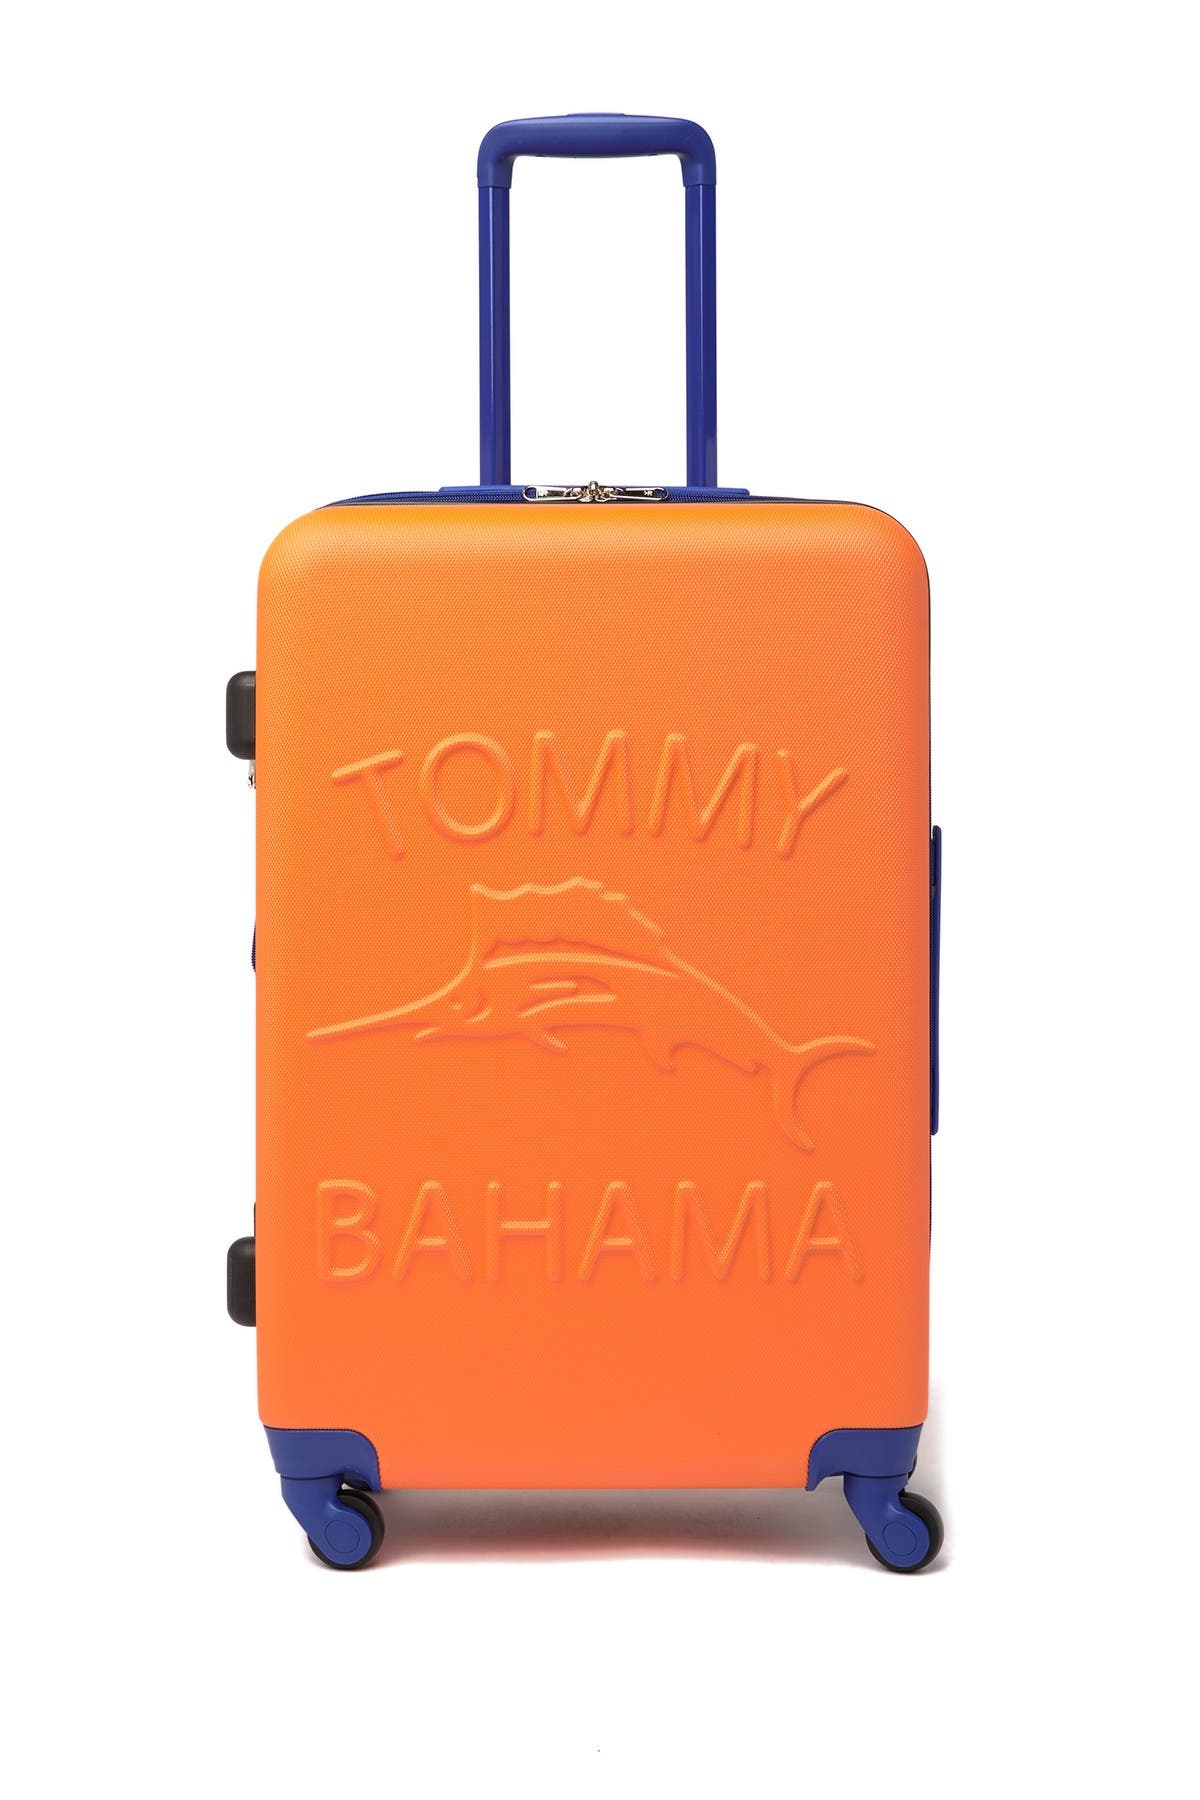 tommy bahama hardside luggage